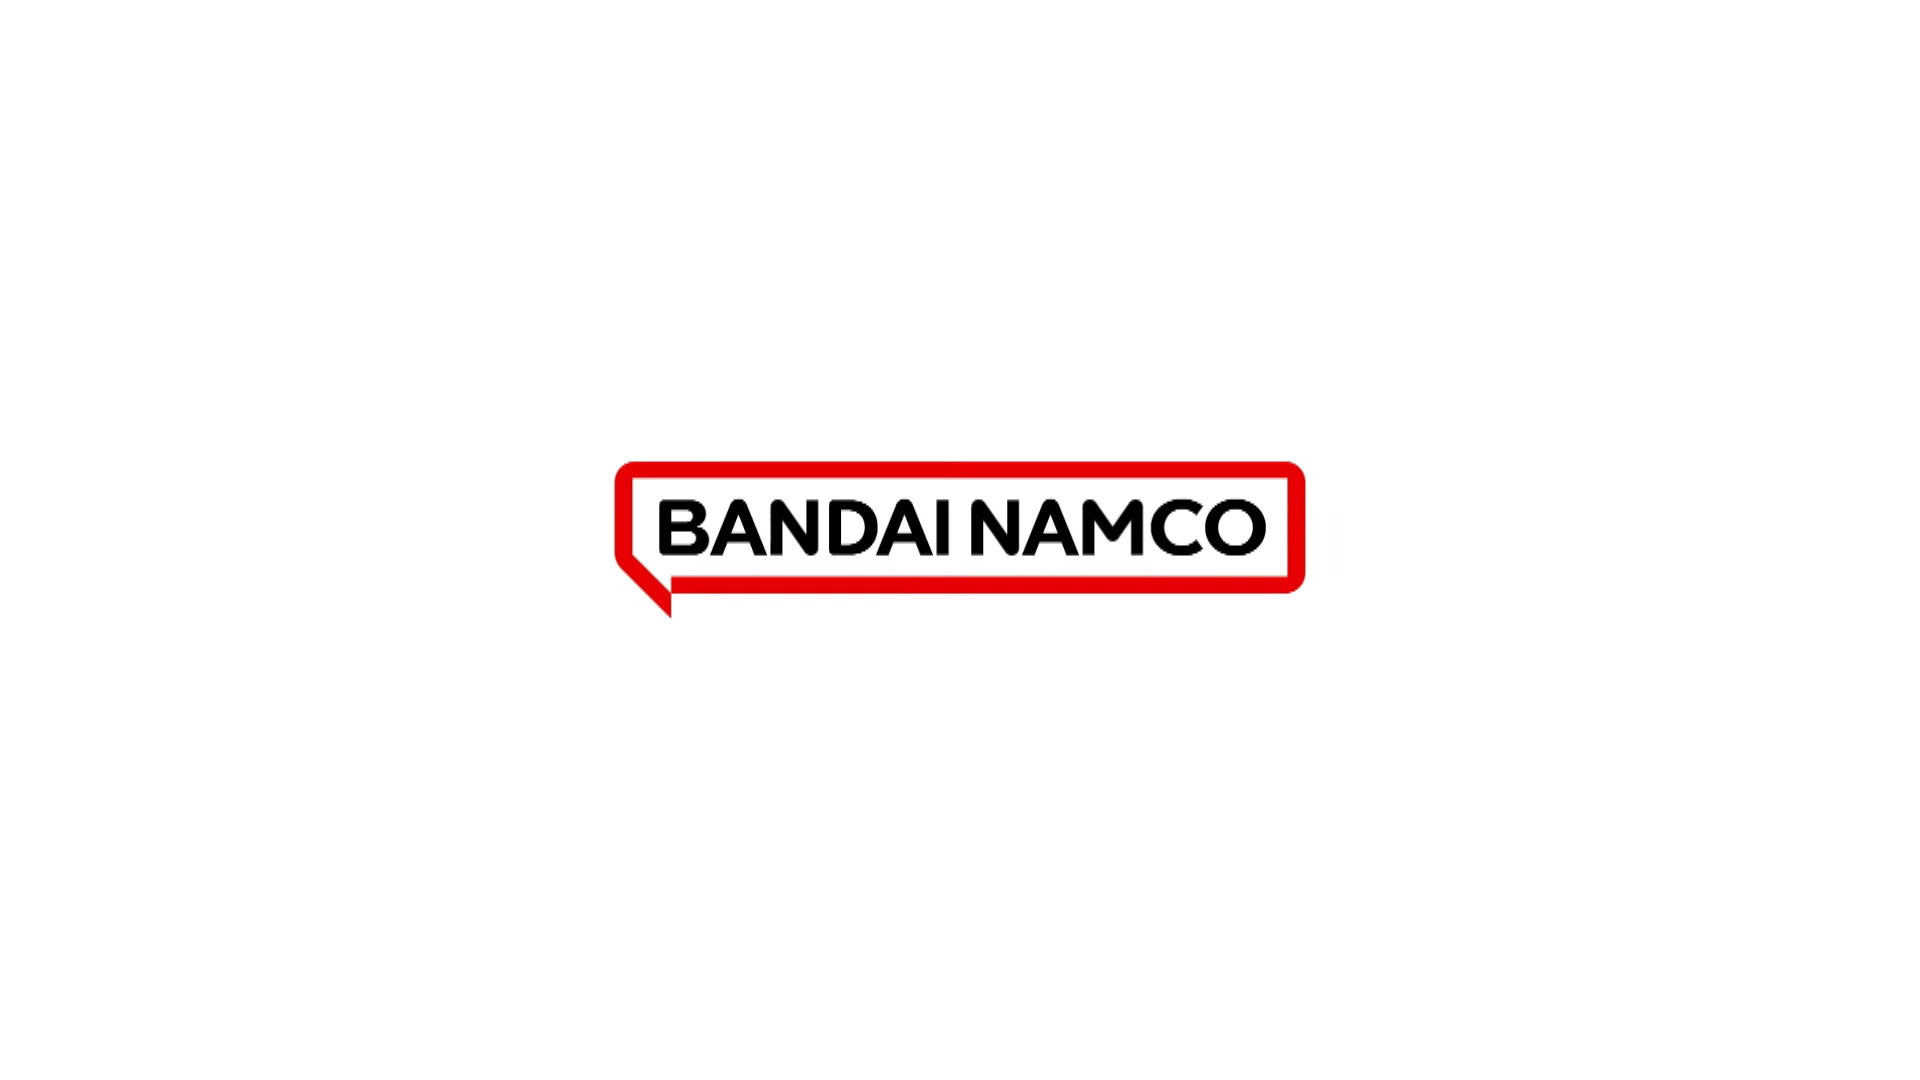 #Bandai Namco stellt gleich zwei Studios für externe Auftragsprojekte auf die Beine